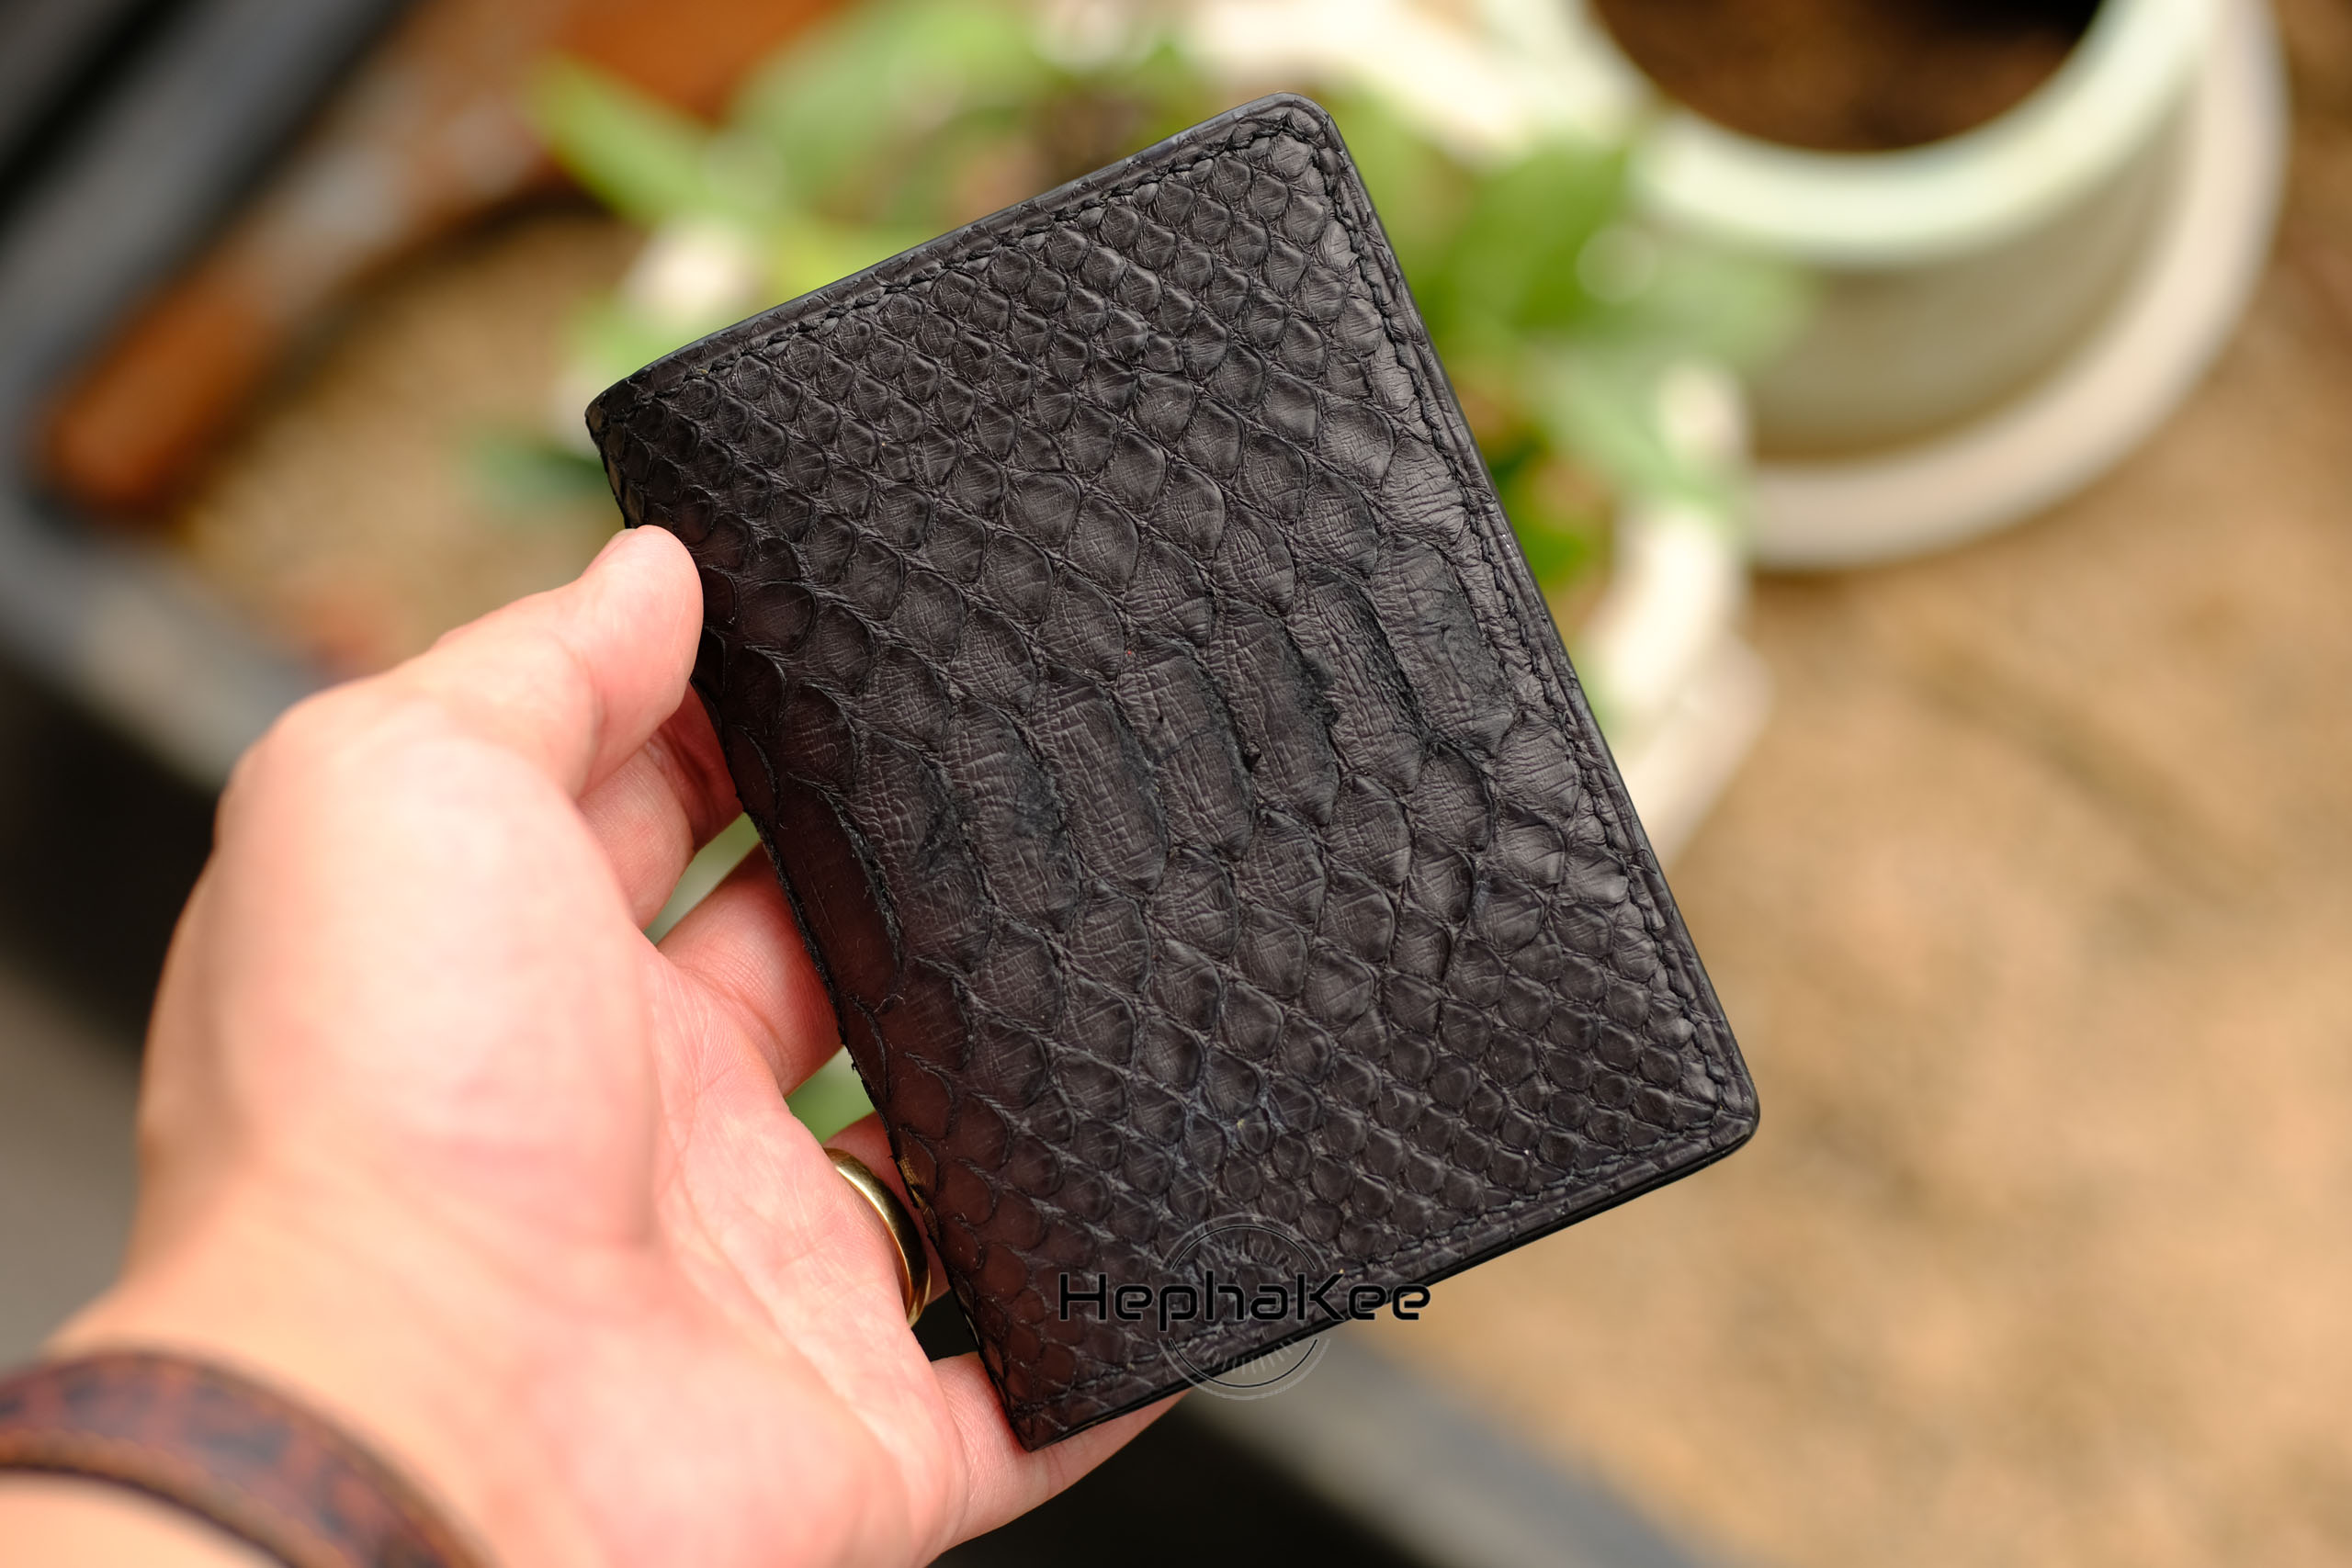 Bespoke Blue Crocodile Leather Bilfold Wallet, Money Clip Handmade W04 -  Hephakee